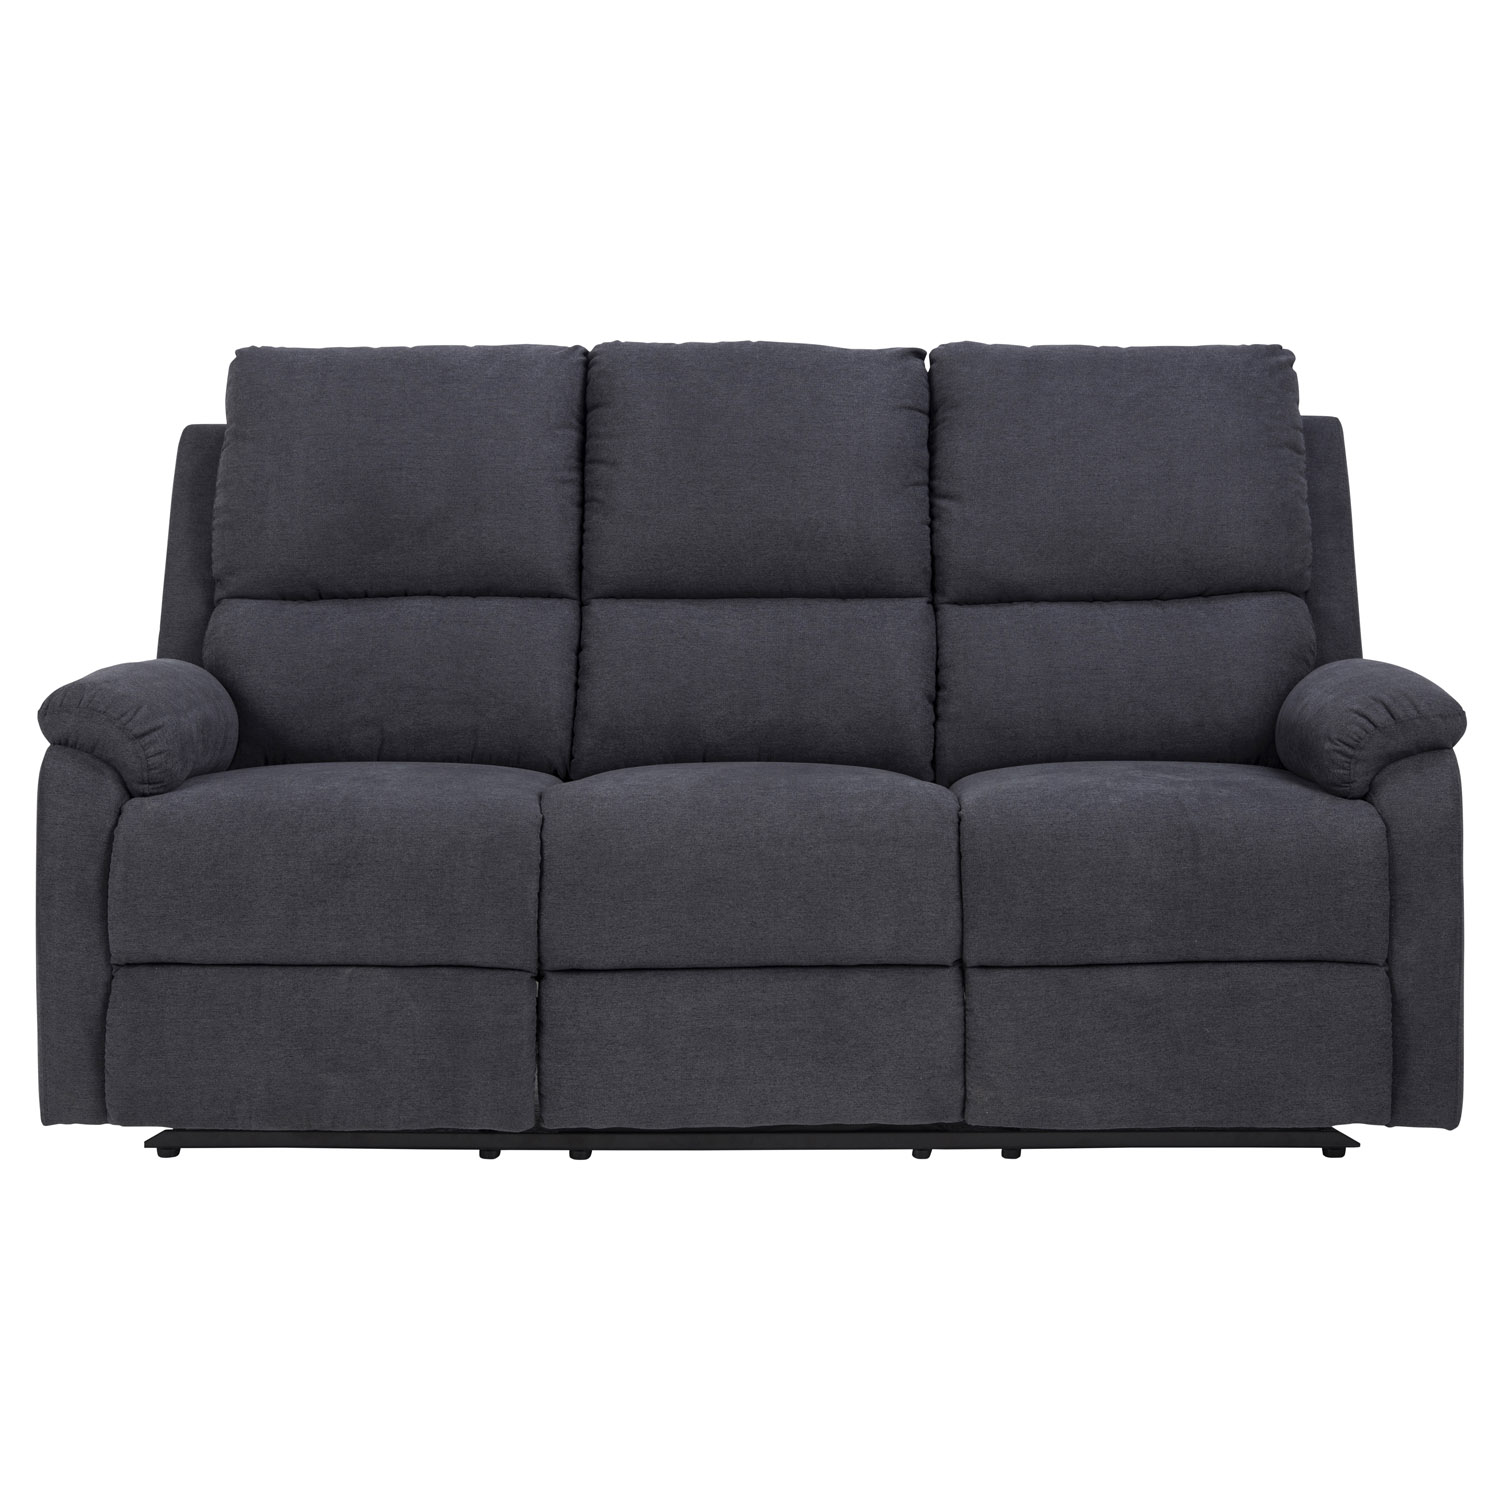 Billede af ACT NORDIC Sabia 3 pers. sofa, m. manuel recliner - mørkegrå stof og metal